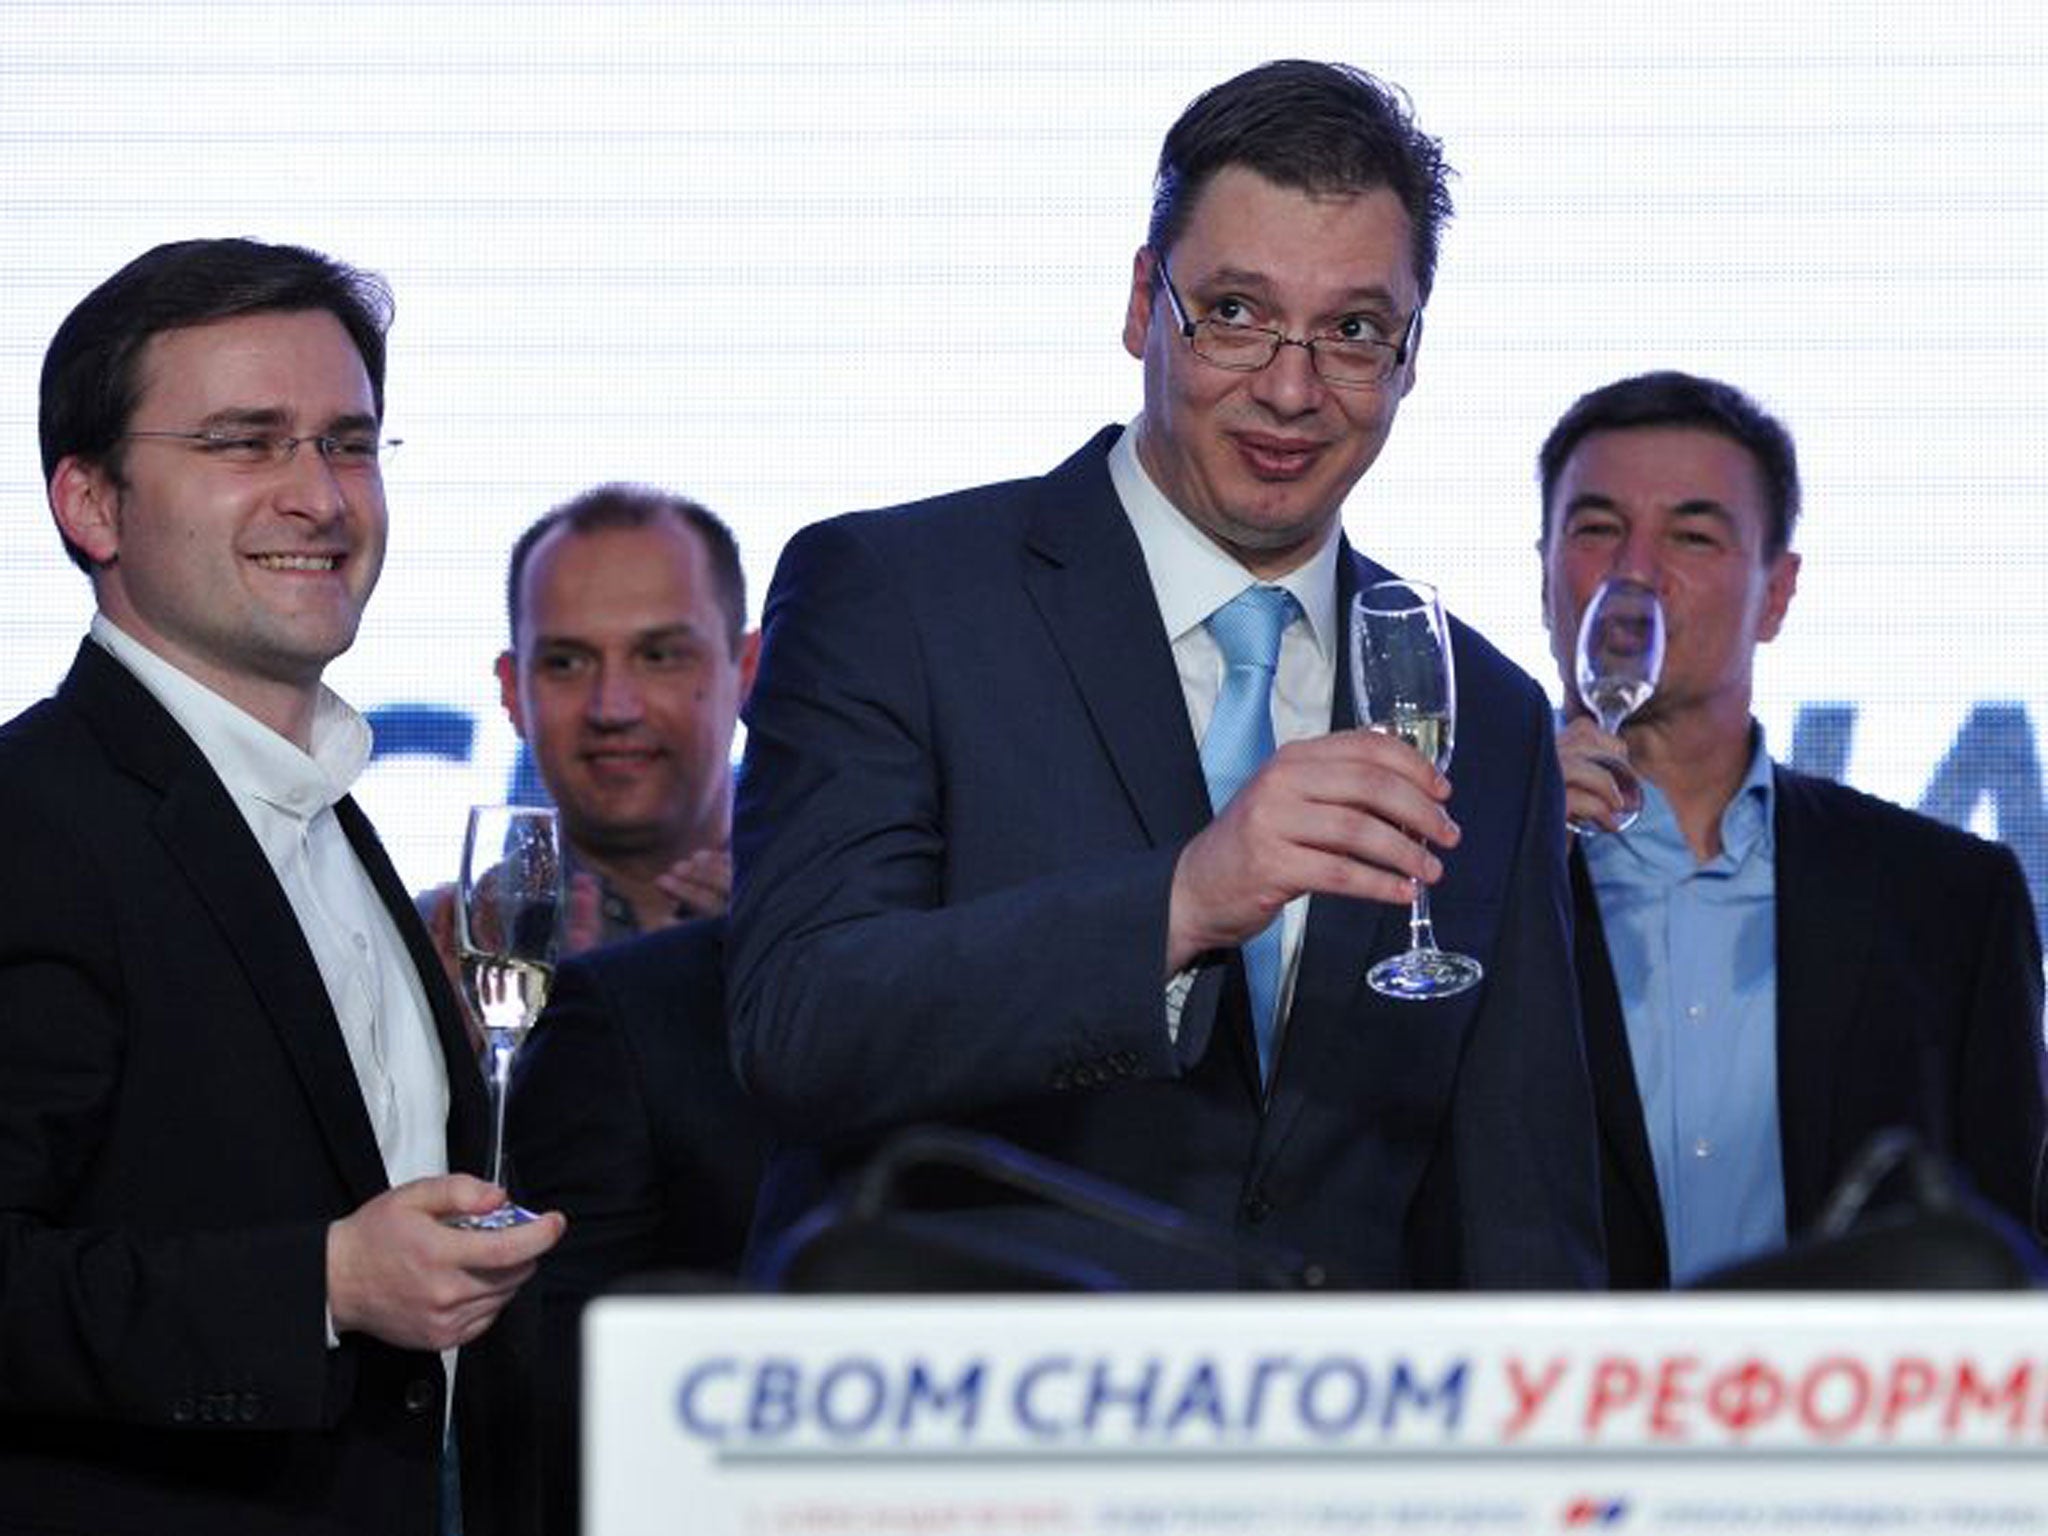 Deputy Prime Minister Aleksandar Vucic, and leader of the ruling Serbian Progressive Party (SNS), centre, celebrates after a landslide victory